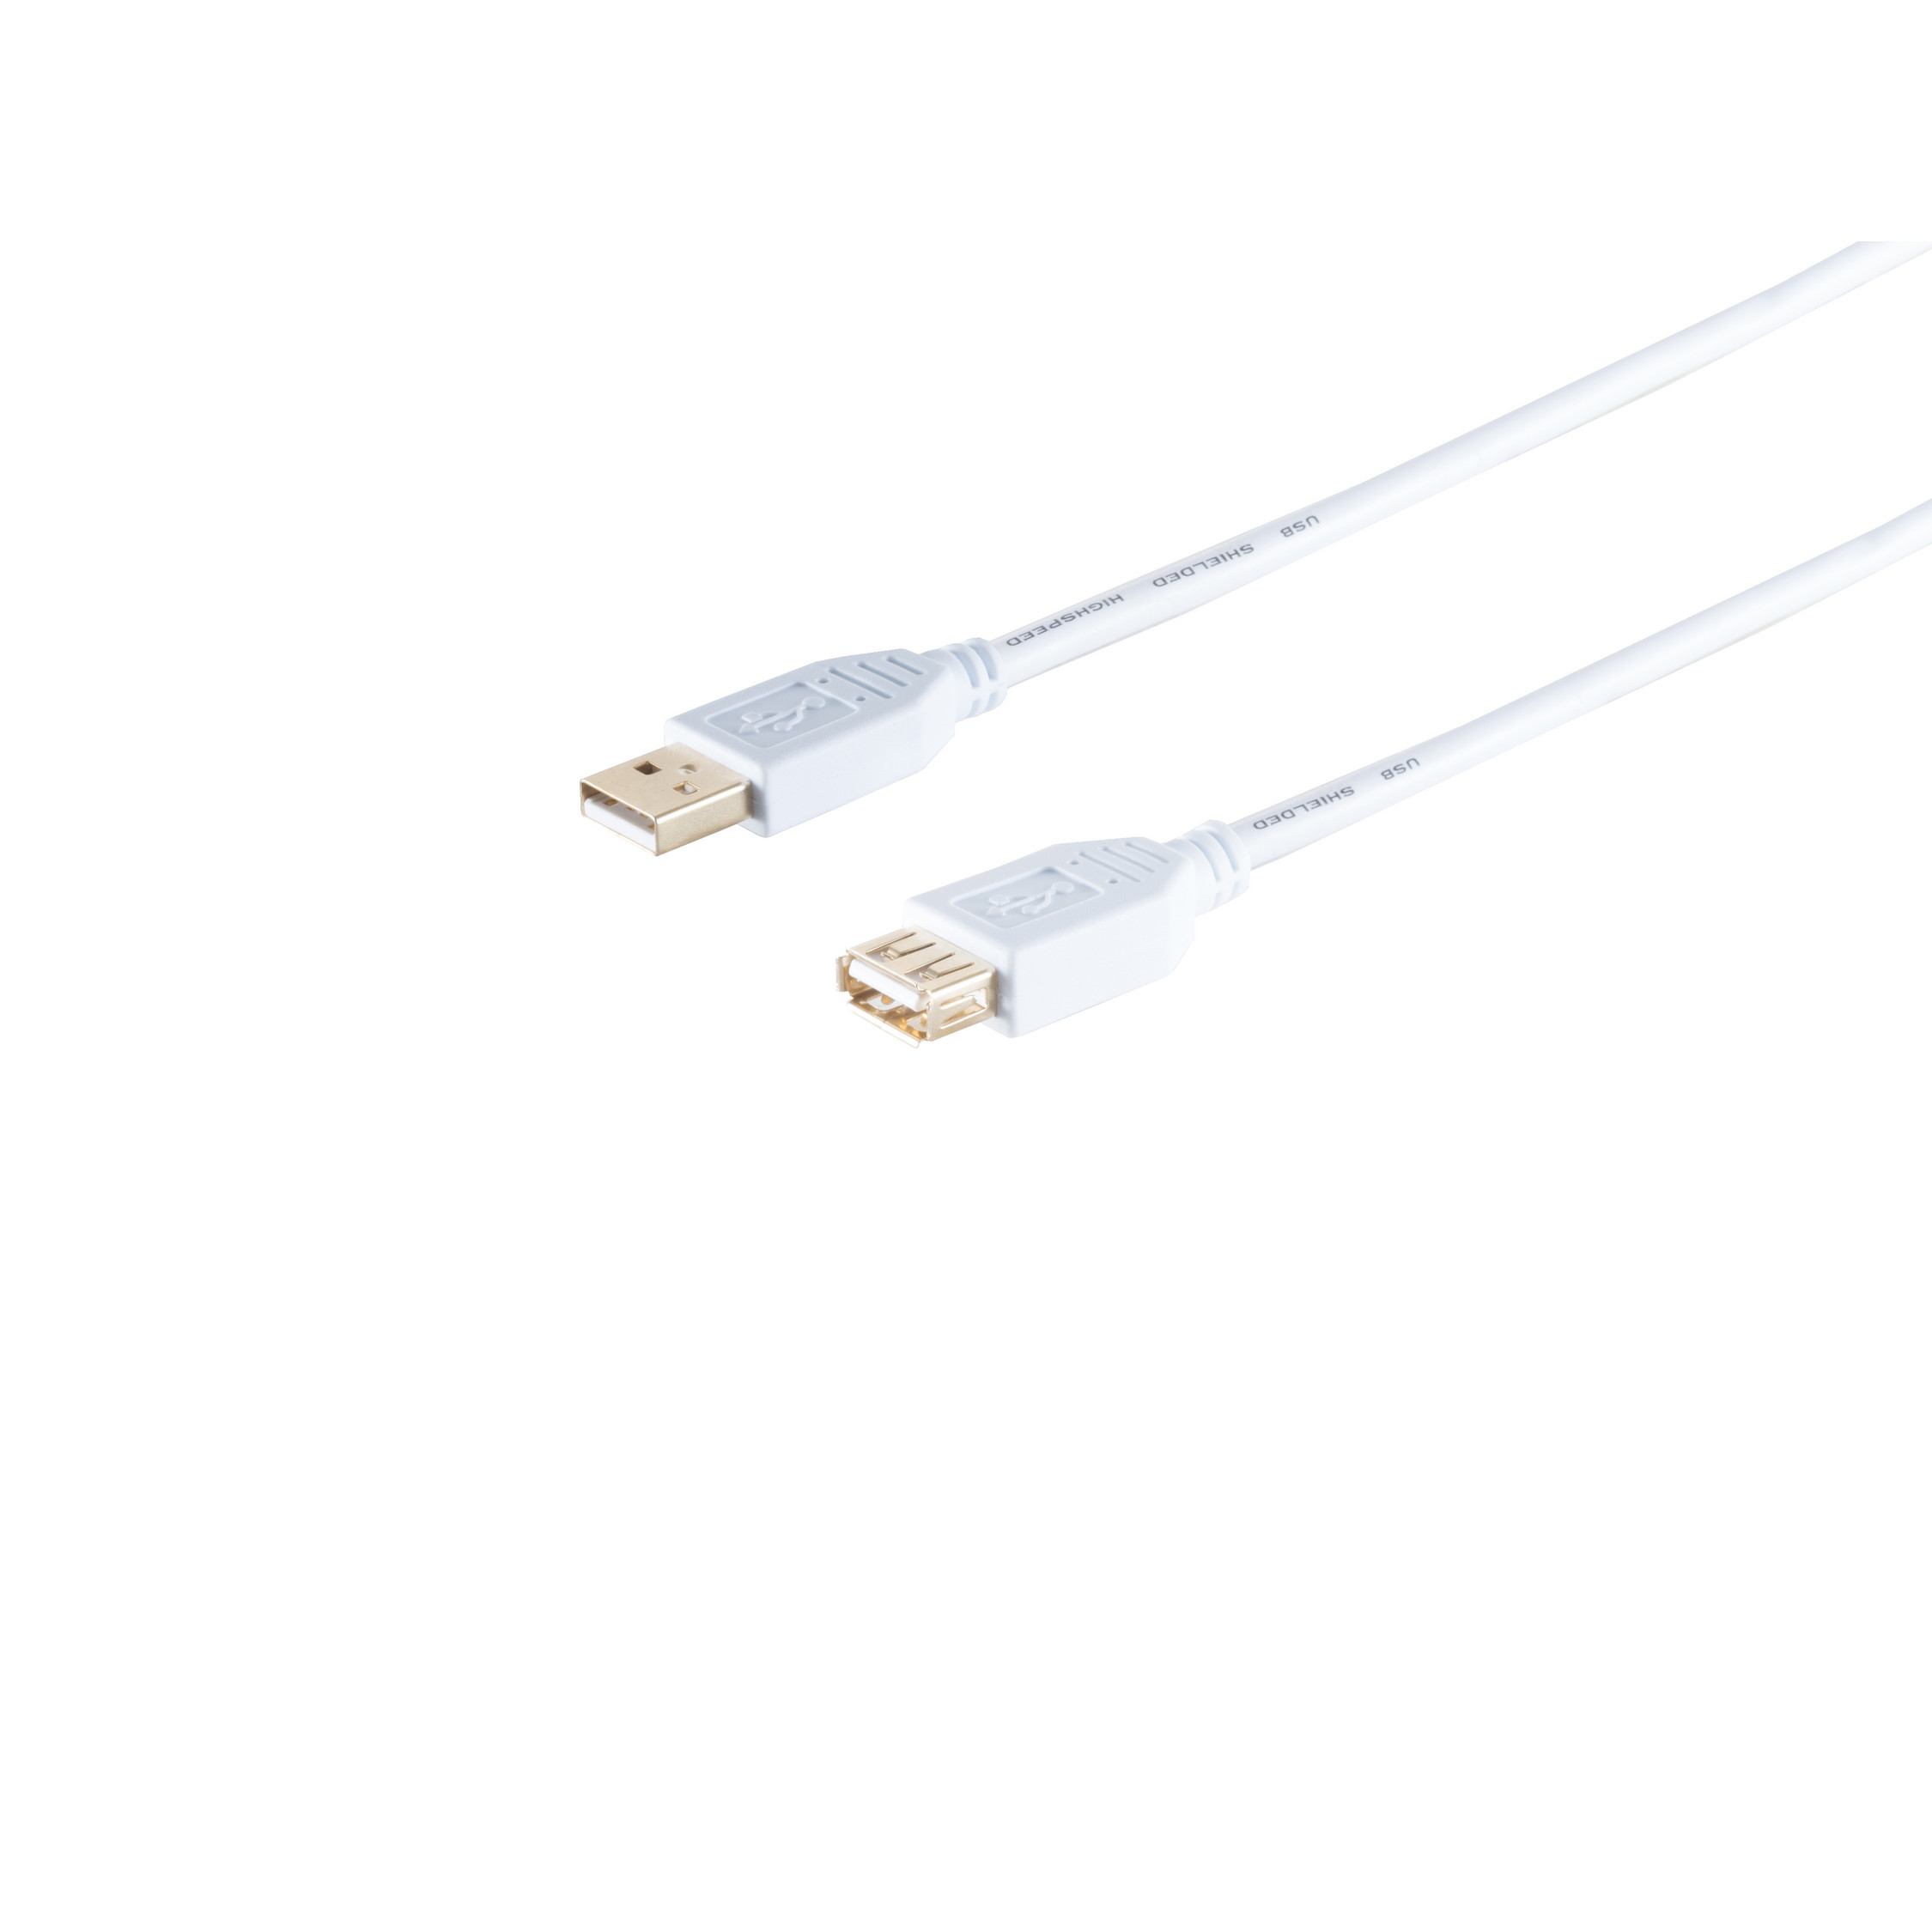 S/CONN MAXIMUM CONNECTIVITY USB USB Kabel Buchse, 5m 2.0, weiß, High Verlängerung, A/A USB Speed 2.0